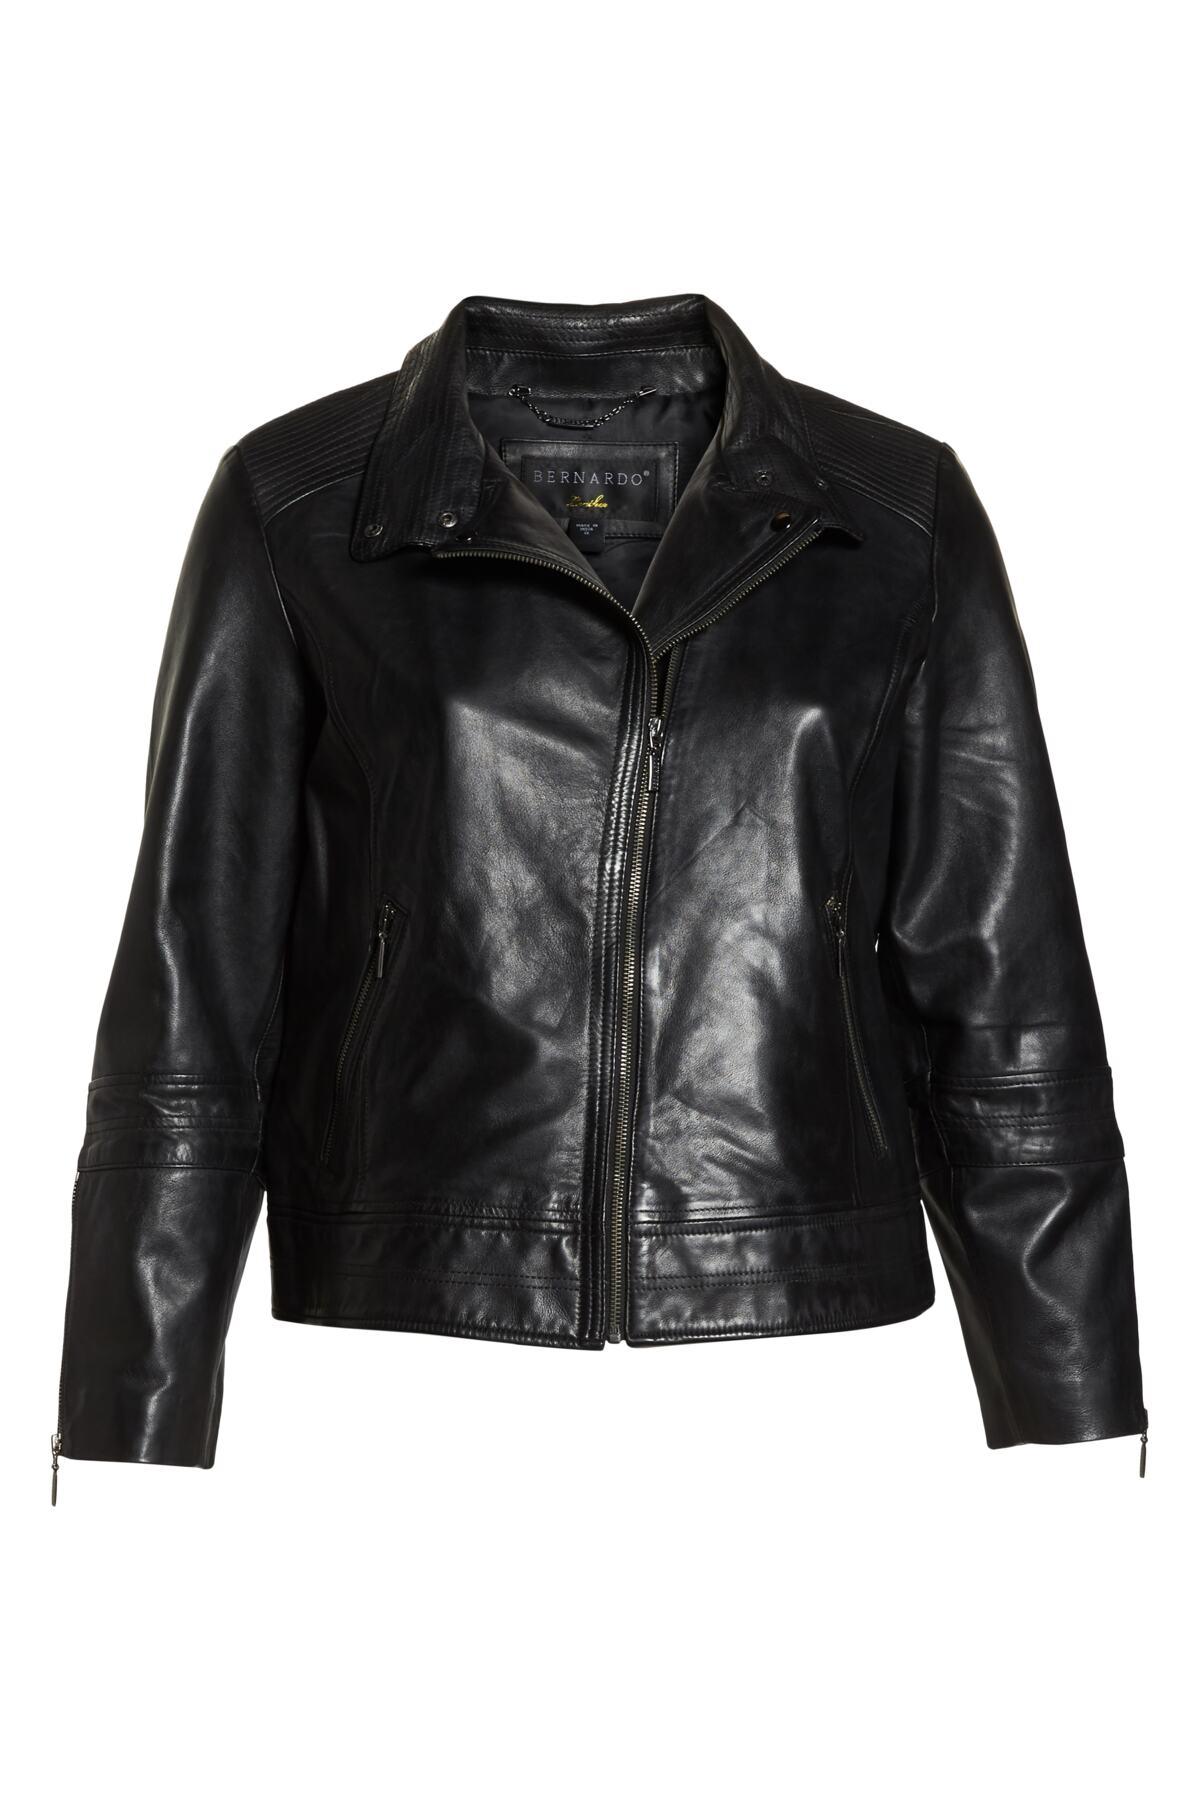 Bernardo Lambskin Leather Moto Jacket in Black Lyst